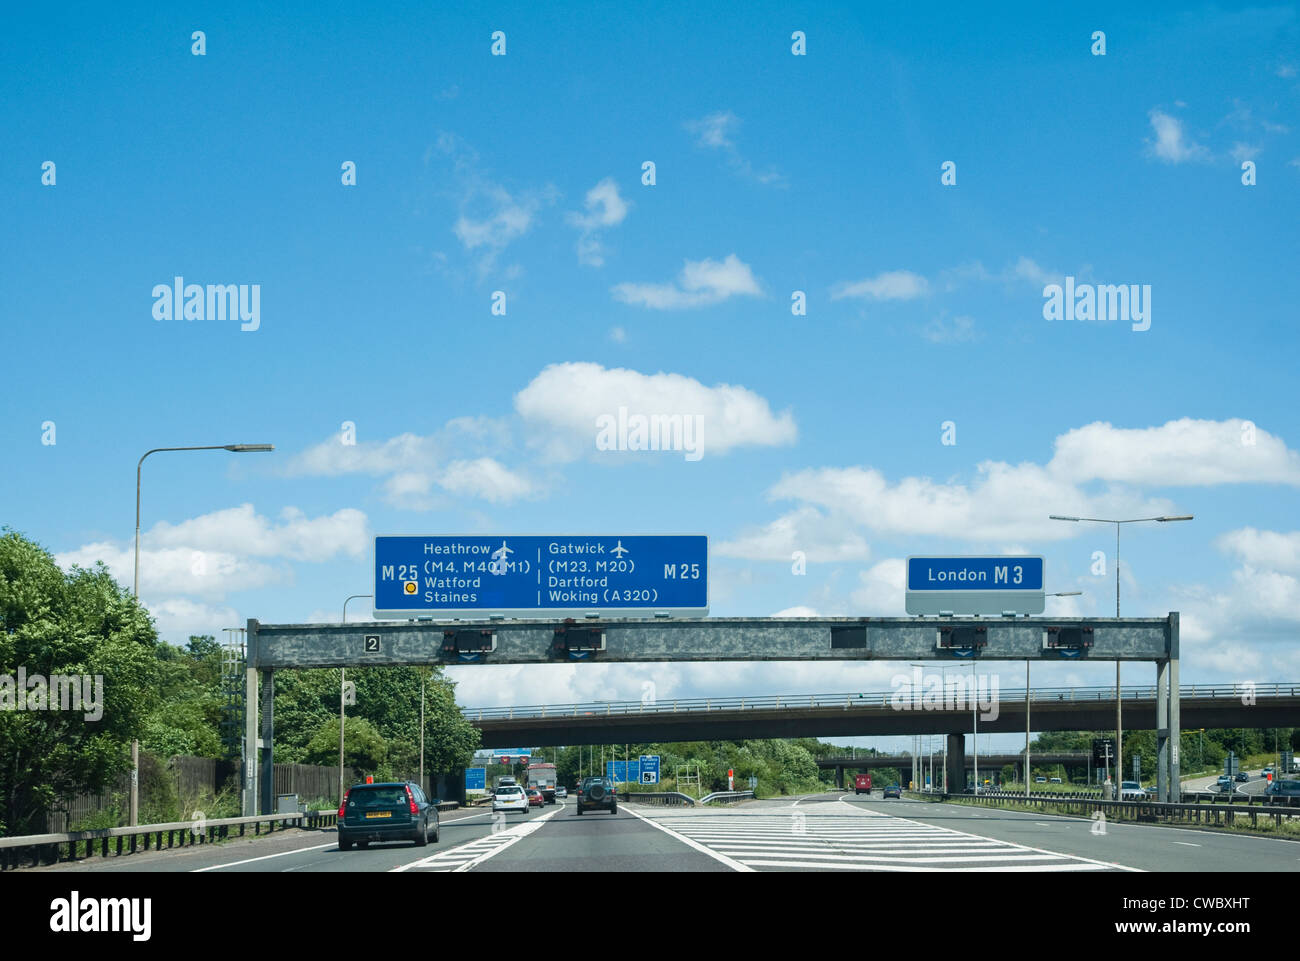 M25 la segnaletica autostradale - con la separazione di corsie per entrambi gli aeroporti di Londra Heathrow e Londra Gatwick a sinistra - o London M3 a destra. Regno Unito Foto Stock